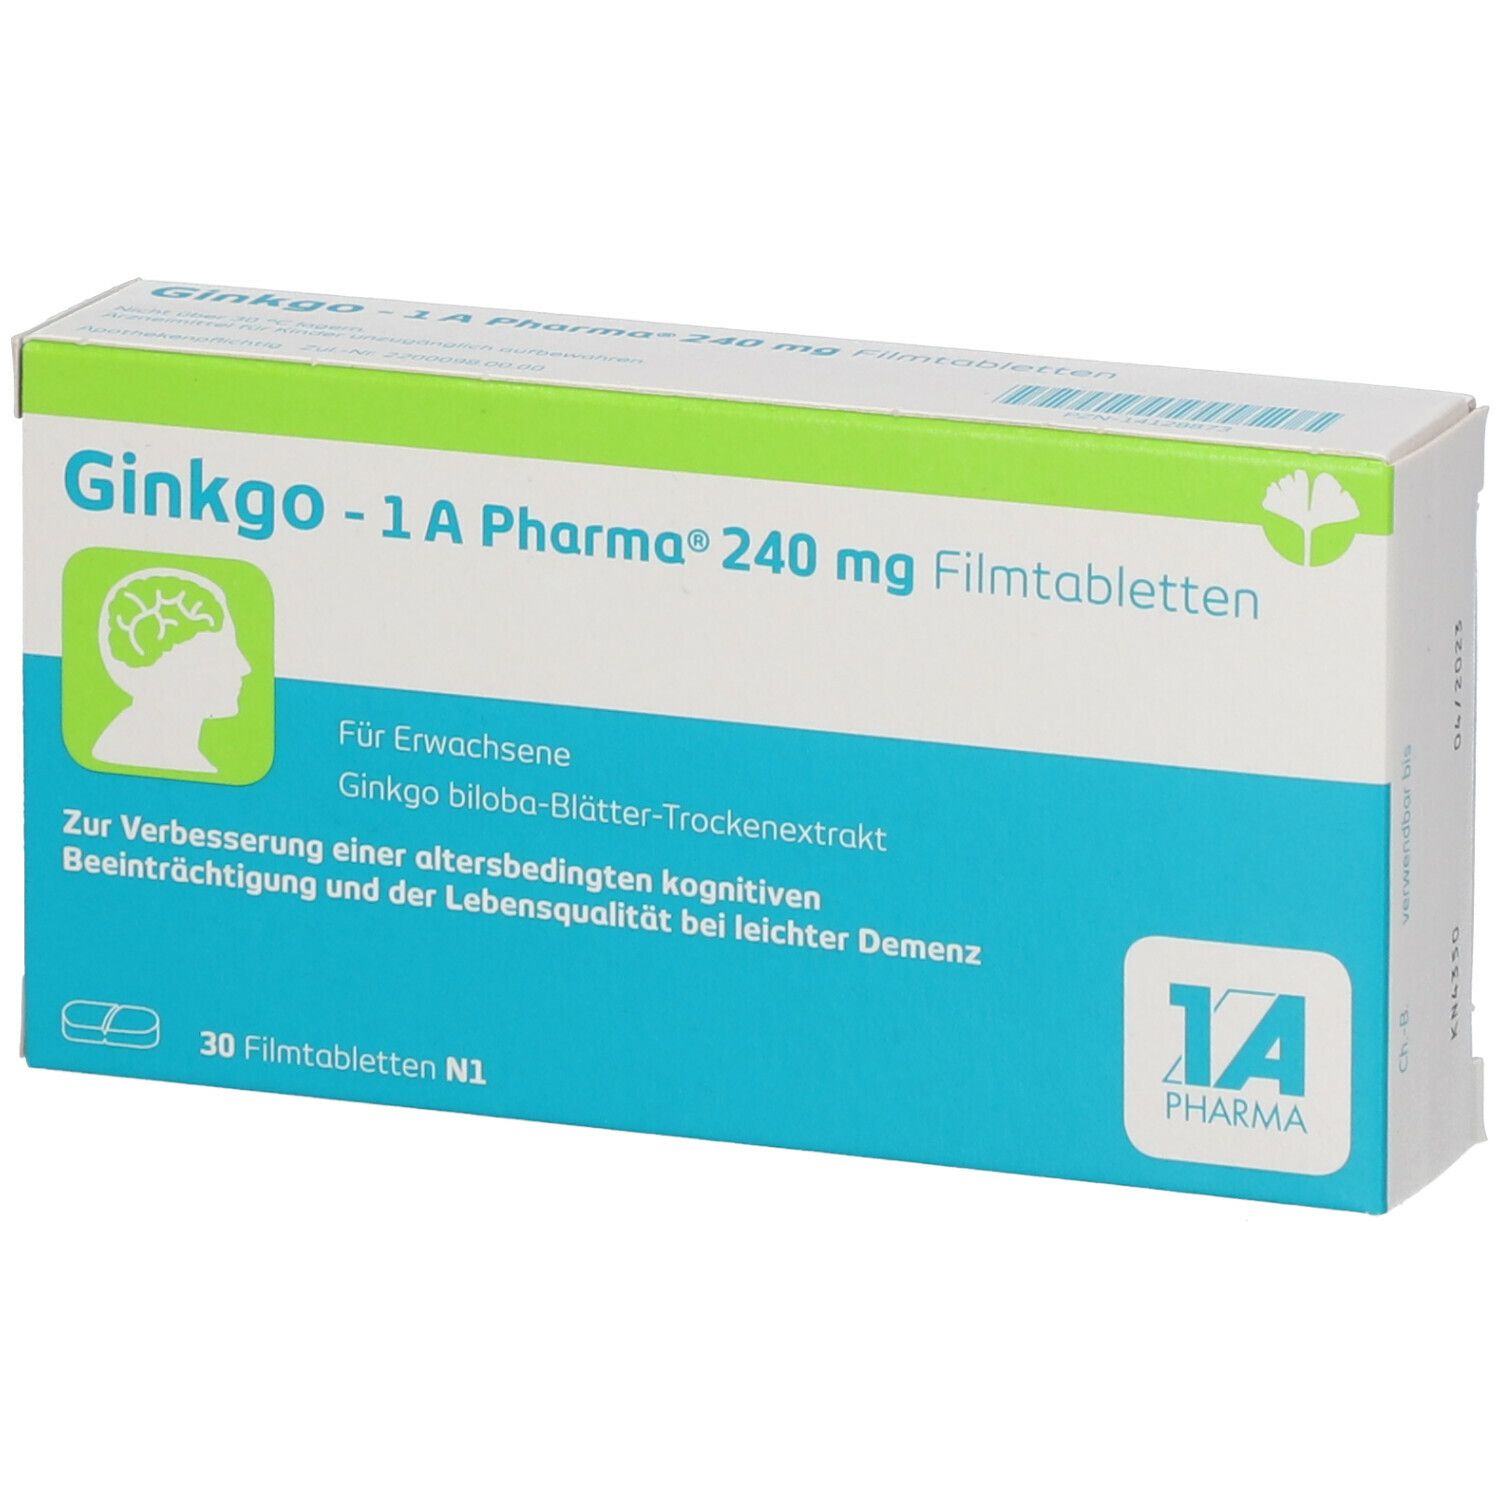 Ginkgo - 1 A Pharma® 240 mg